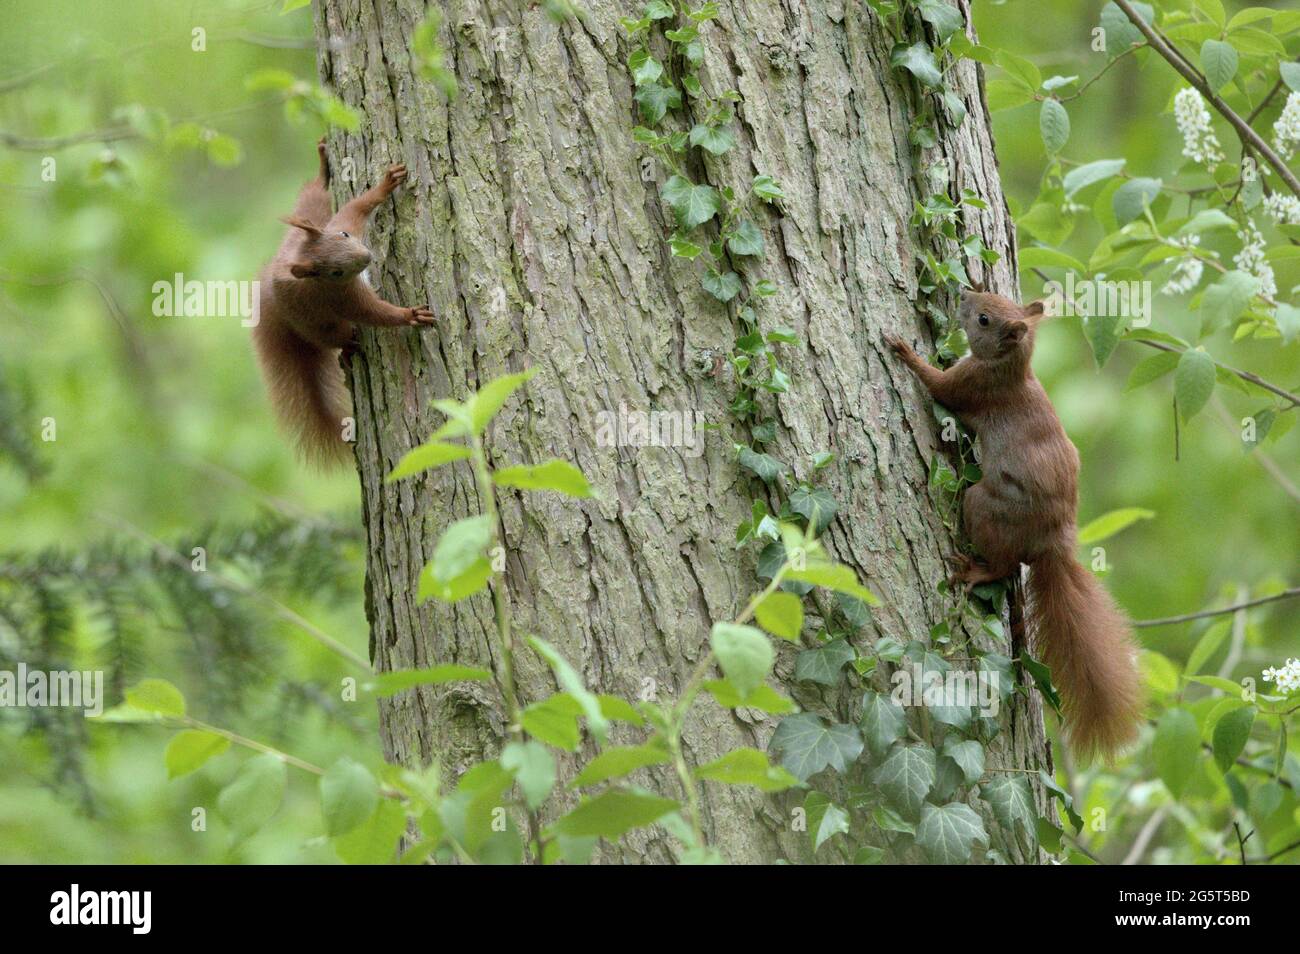 Ardilla roja europea, ardilla roja eurasiática (Sciurus vulgaris), dos ardillas suben en un tronco de árbol, Alemania, Mecklemburgo-Pomerania Occidental Foto de stock